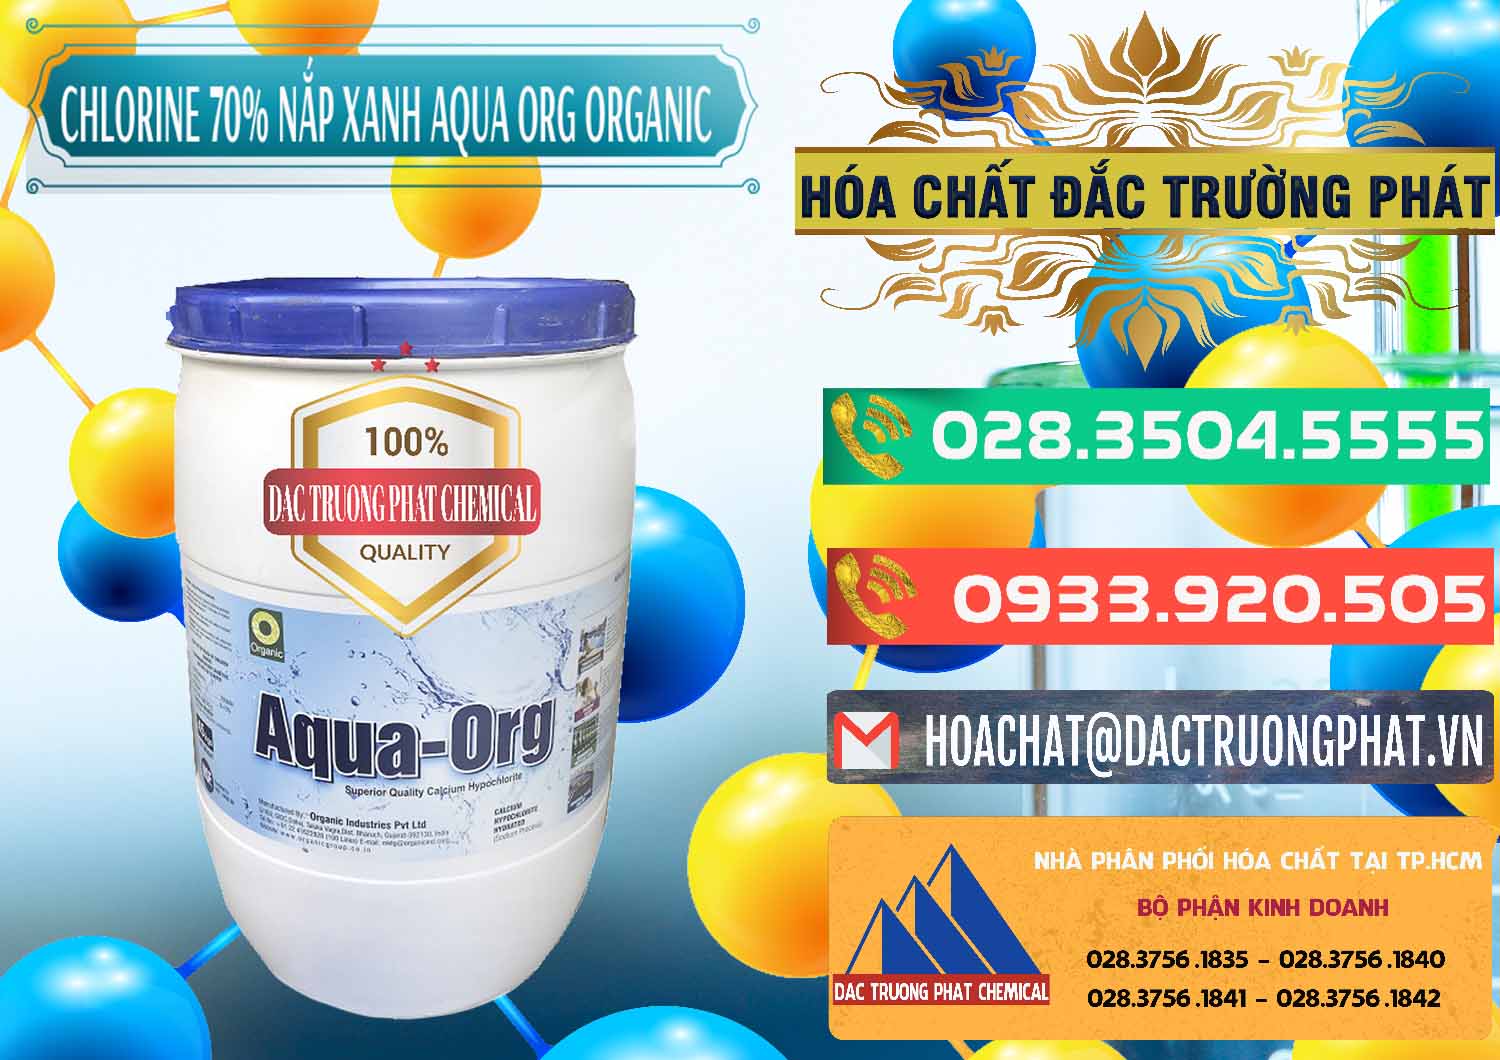 Nơi bán _ cung cấp Chlorine – Clorin 70% Thùng Tròn Nắp Xanh Aqua ORG Organic Ấn Độ India - 0247 - Cty nhập khẩu & phân phối hóa chất tại TP.HCM - congtyhoachat.com.vn